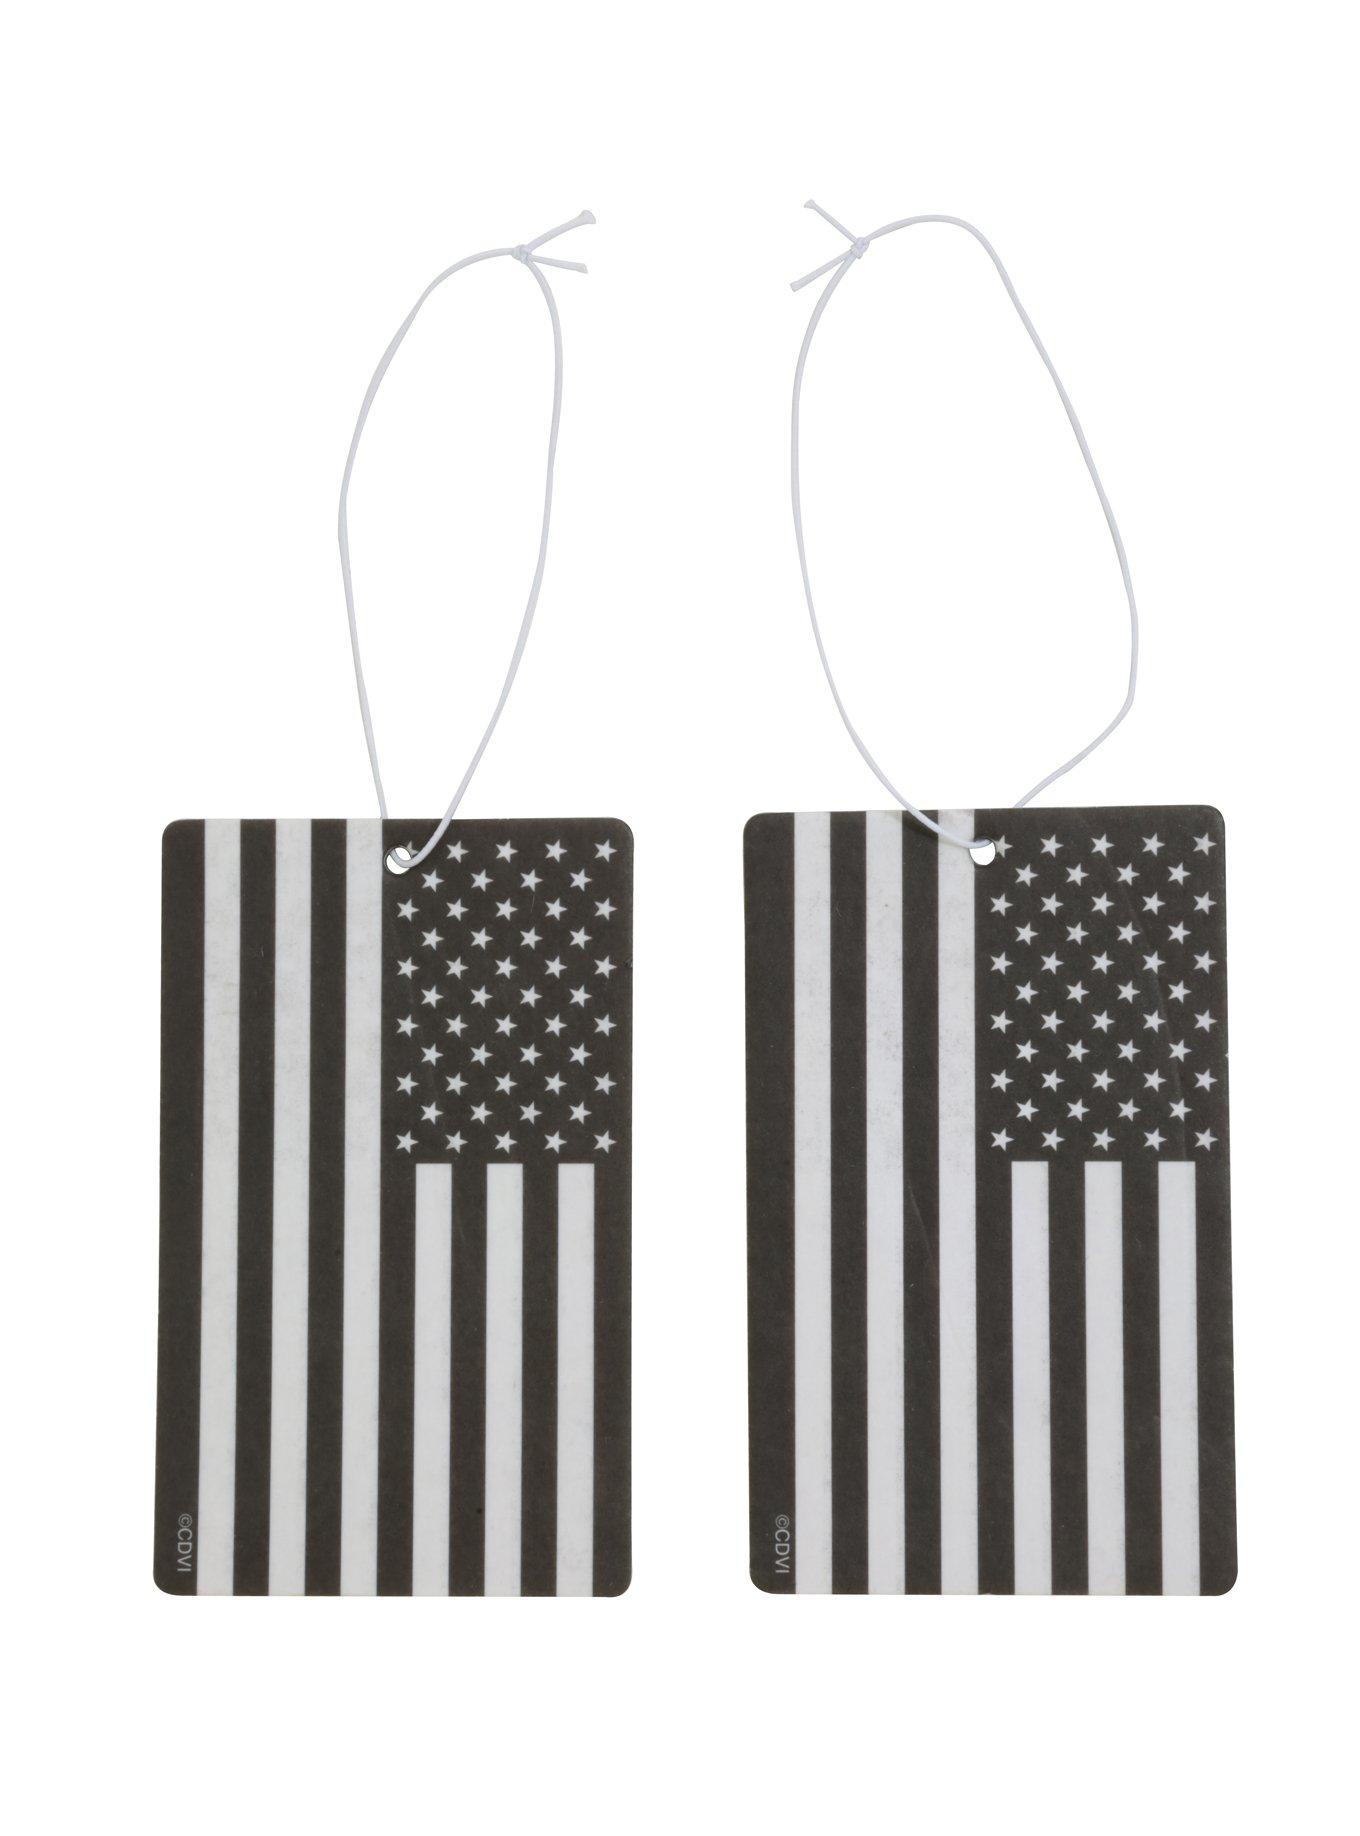 Black And White American Flag Air Freshener, , alternate